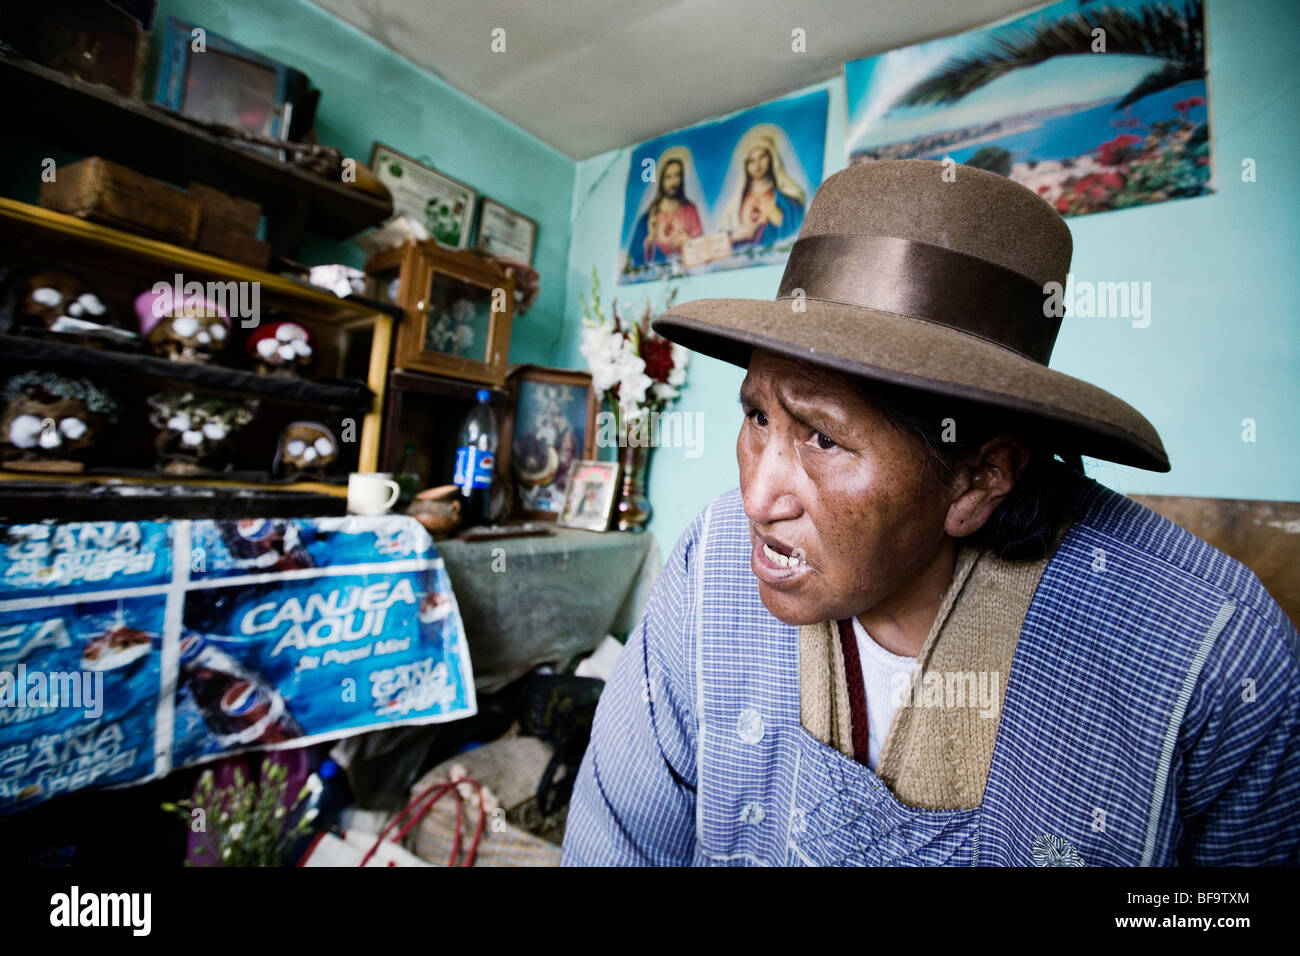 Yatiri, uno sciamano di Aymara gruppo indigeno, ha teschi umani e immagini di Gesù nel suo ufficio. El Alto, La Paz, Bolivia. Foto Stock